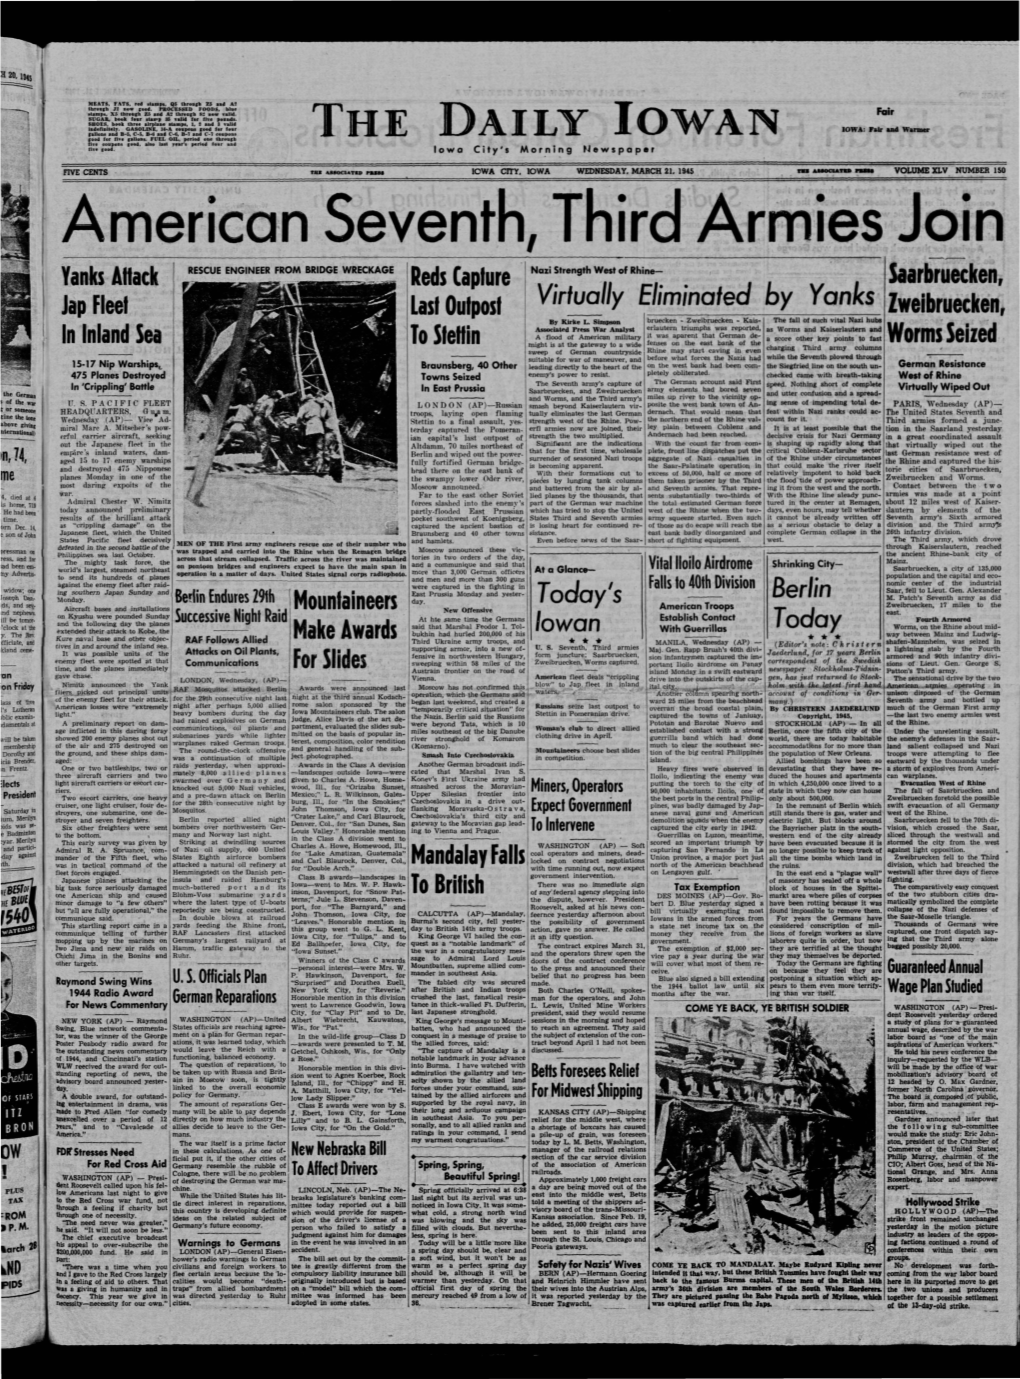 Daily Iowan (Iowa City, Iowa), 1945-03-21